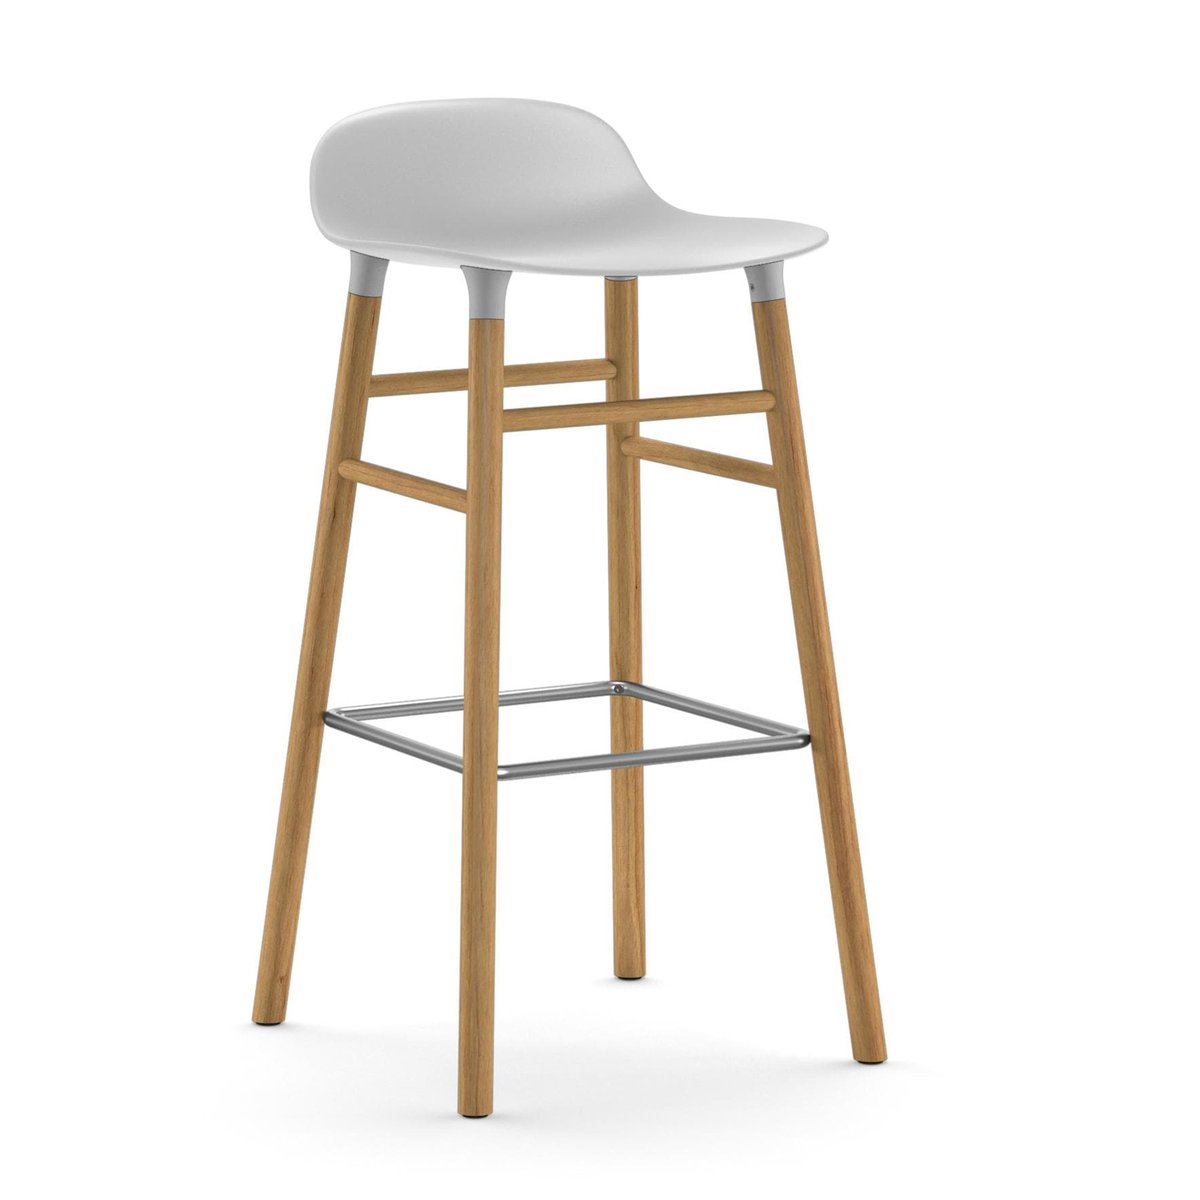 Normann Copenhagen Form Chair barkruk eiken poten wit